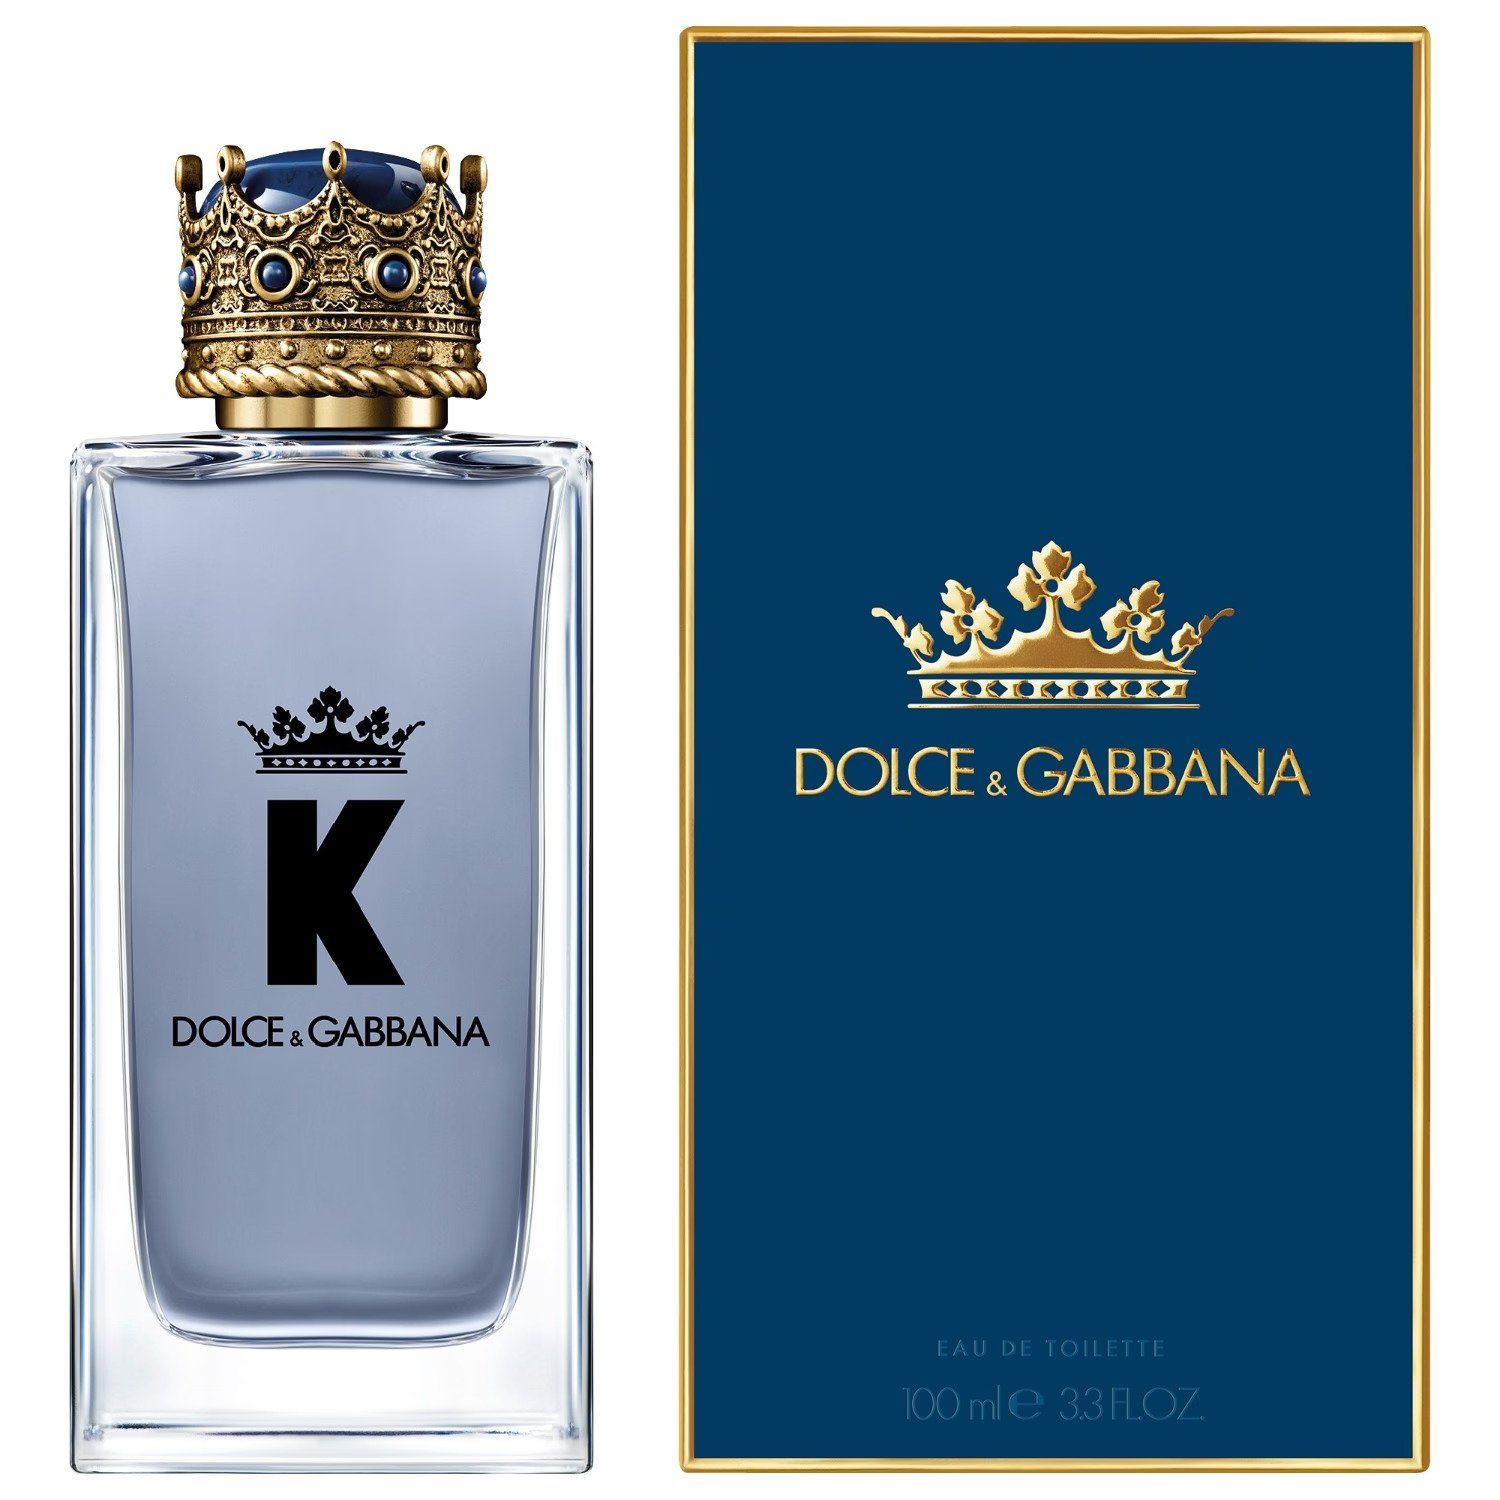 DOLCE & GABBANA Eau de Parfum 100 ml K by Dolce&Gabbana: Moderne Männlichkeit in toskanischer, Frisch, würzig, holzig – der Duft eines modernen Königs